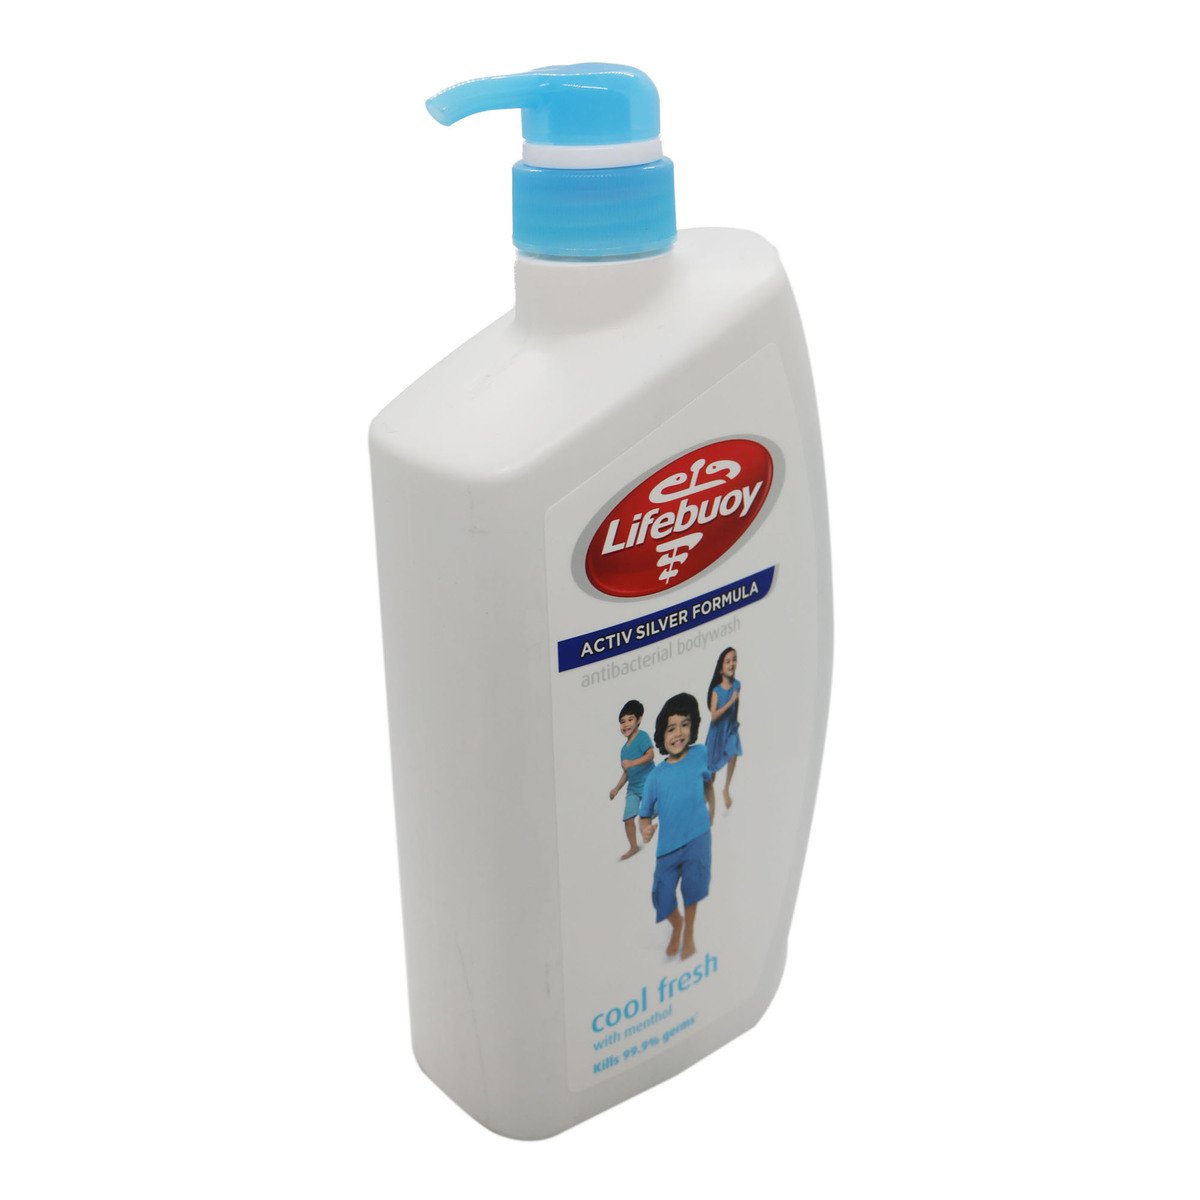 Lifebuoy Cool Fresh Body Wash 950ml